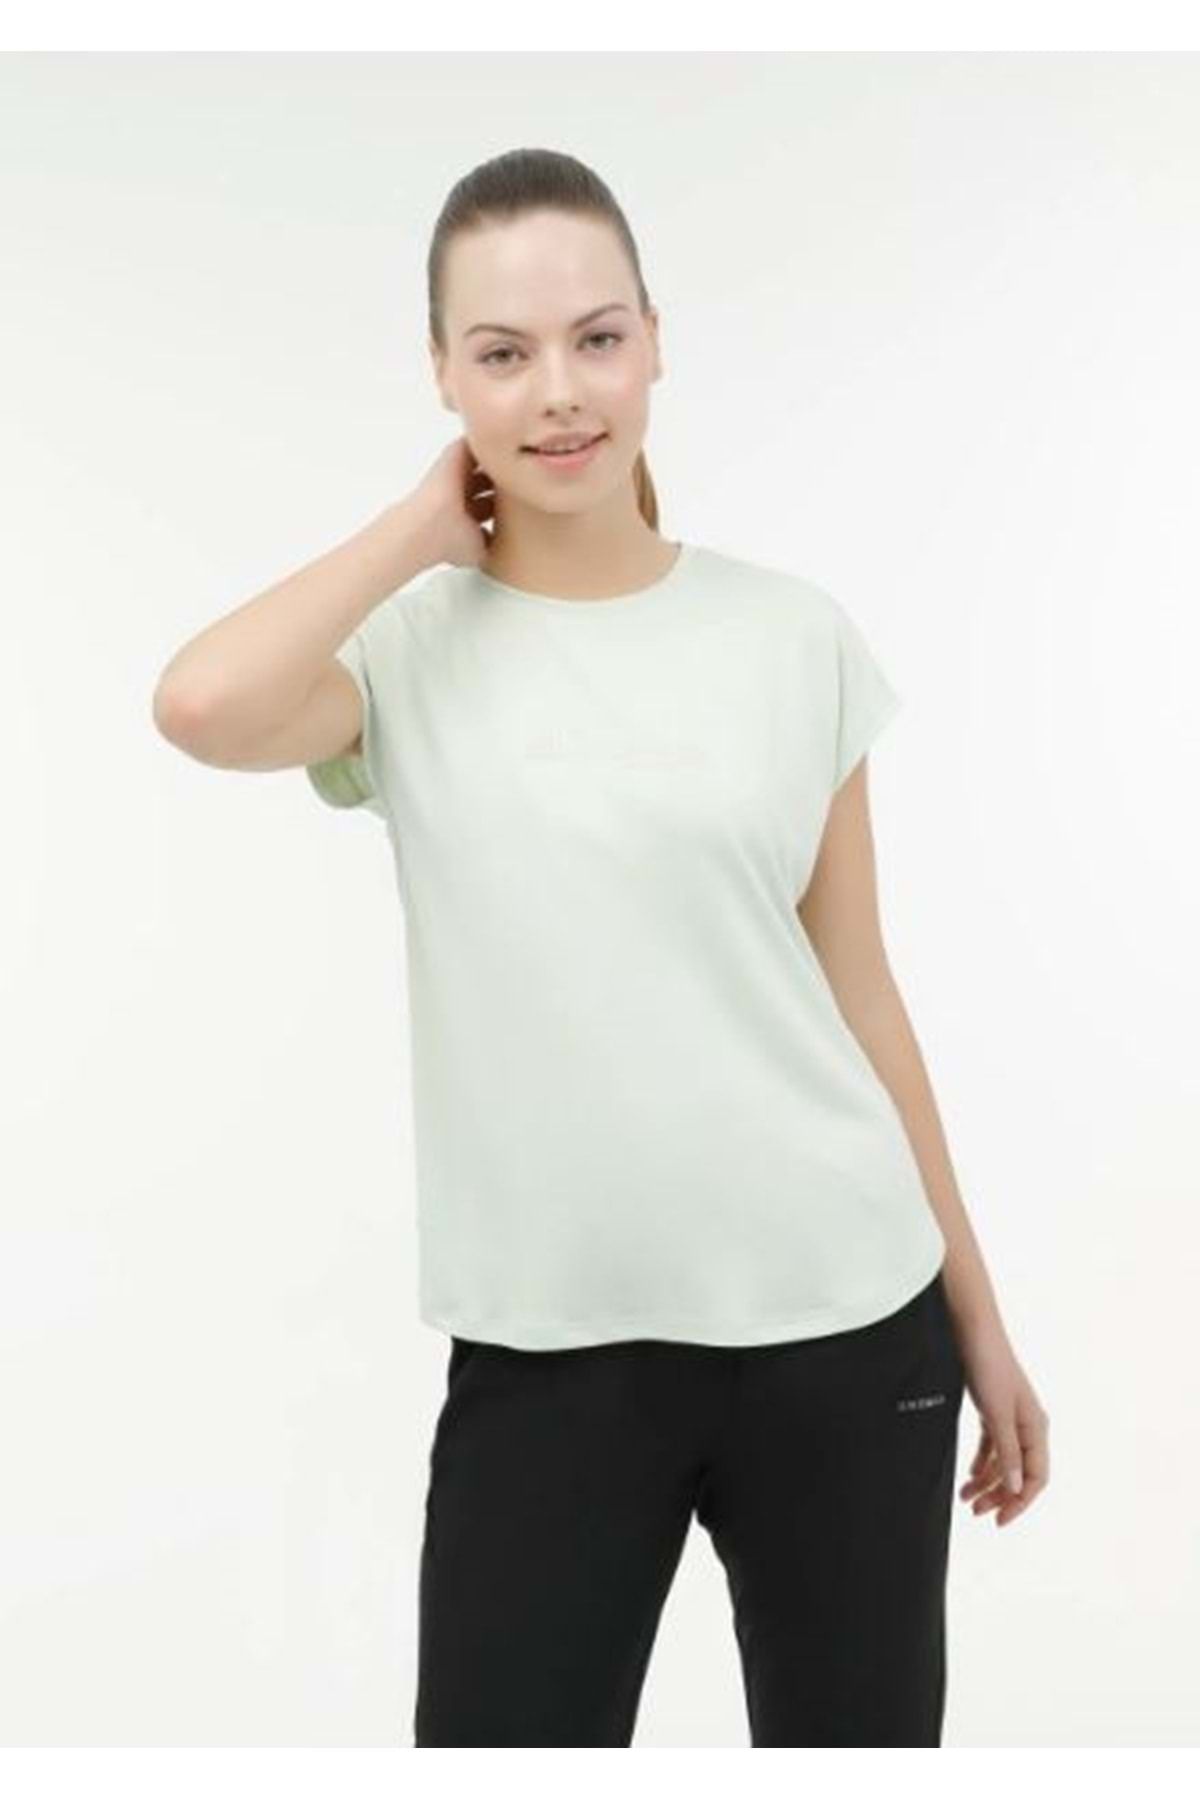 Lumberjack Wl Blaır 11ct1092 3fx Pastel Yesıl Kadın Kısa Kol T-shirt Kadın Tişört Yeşil